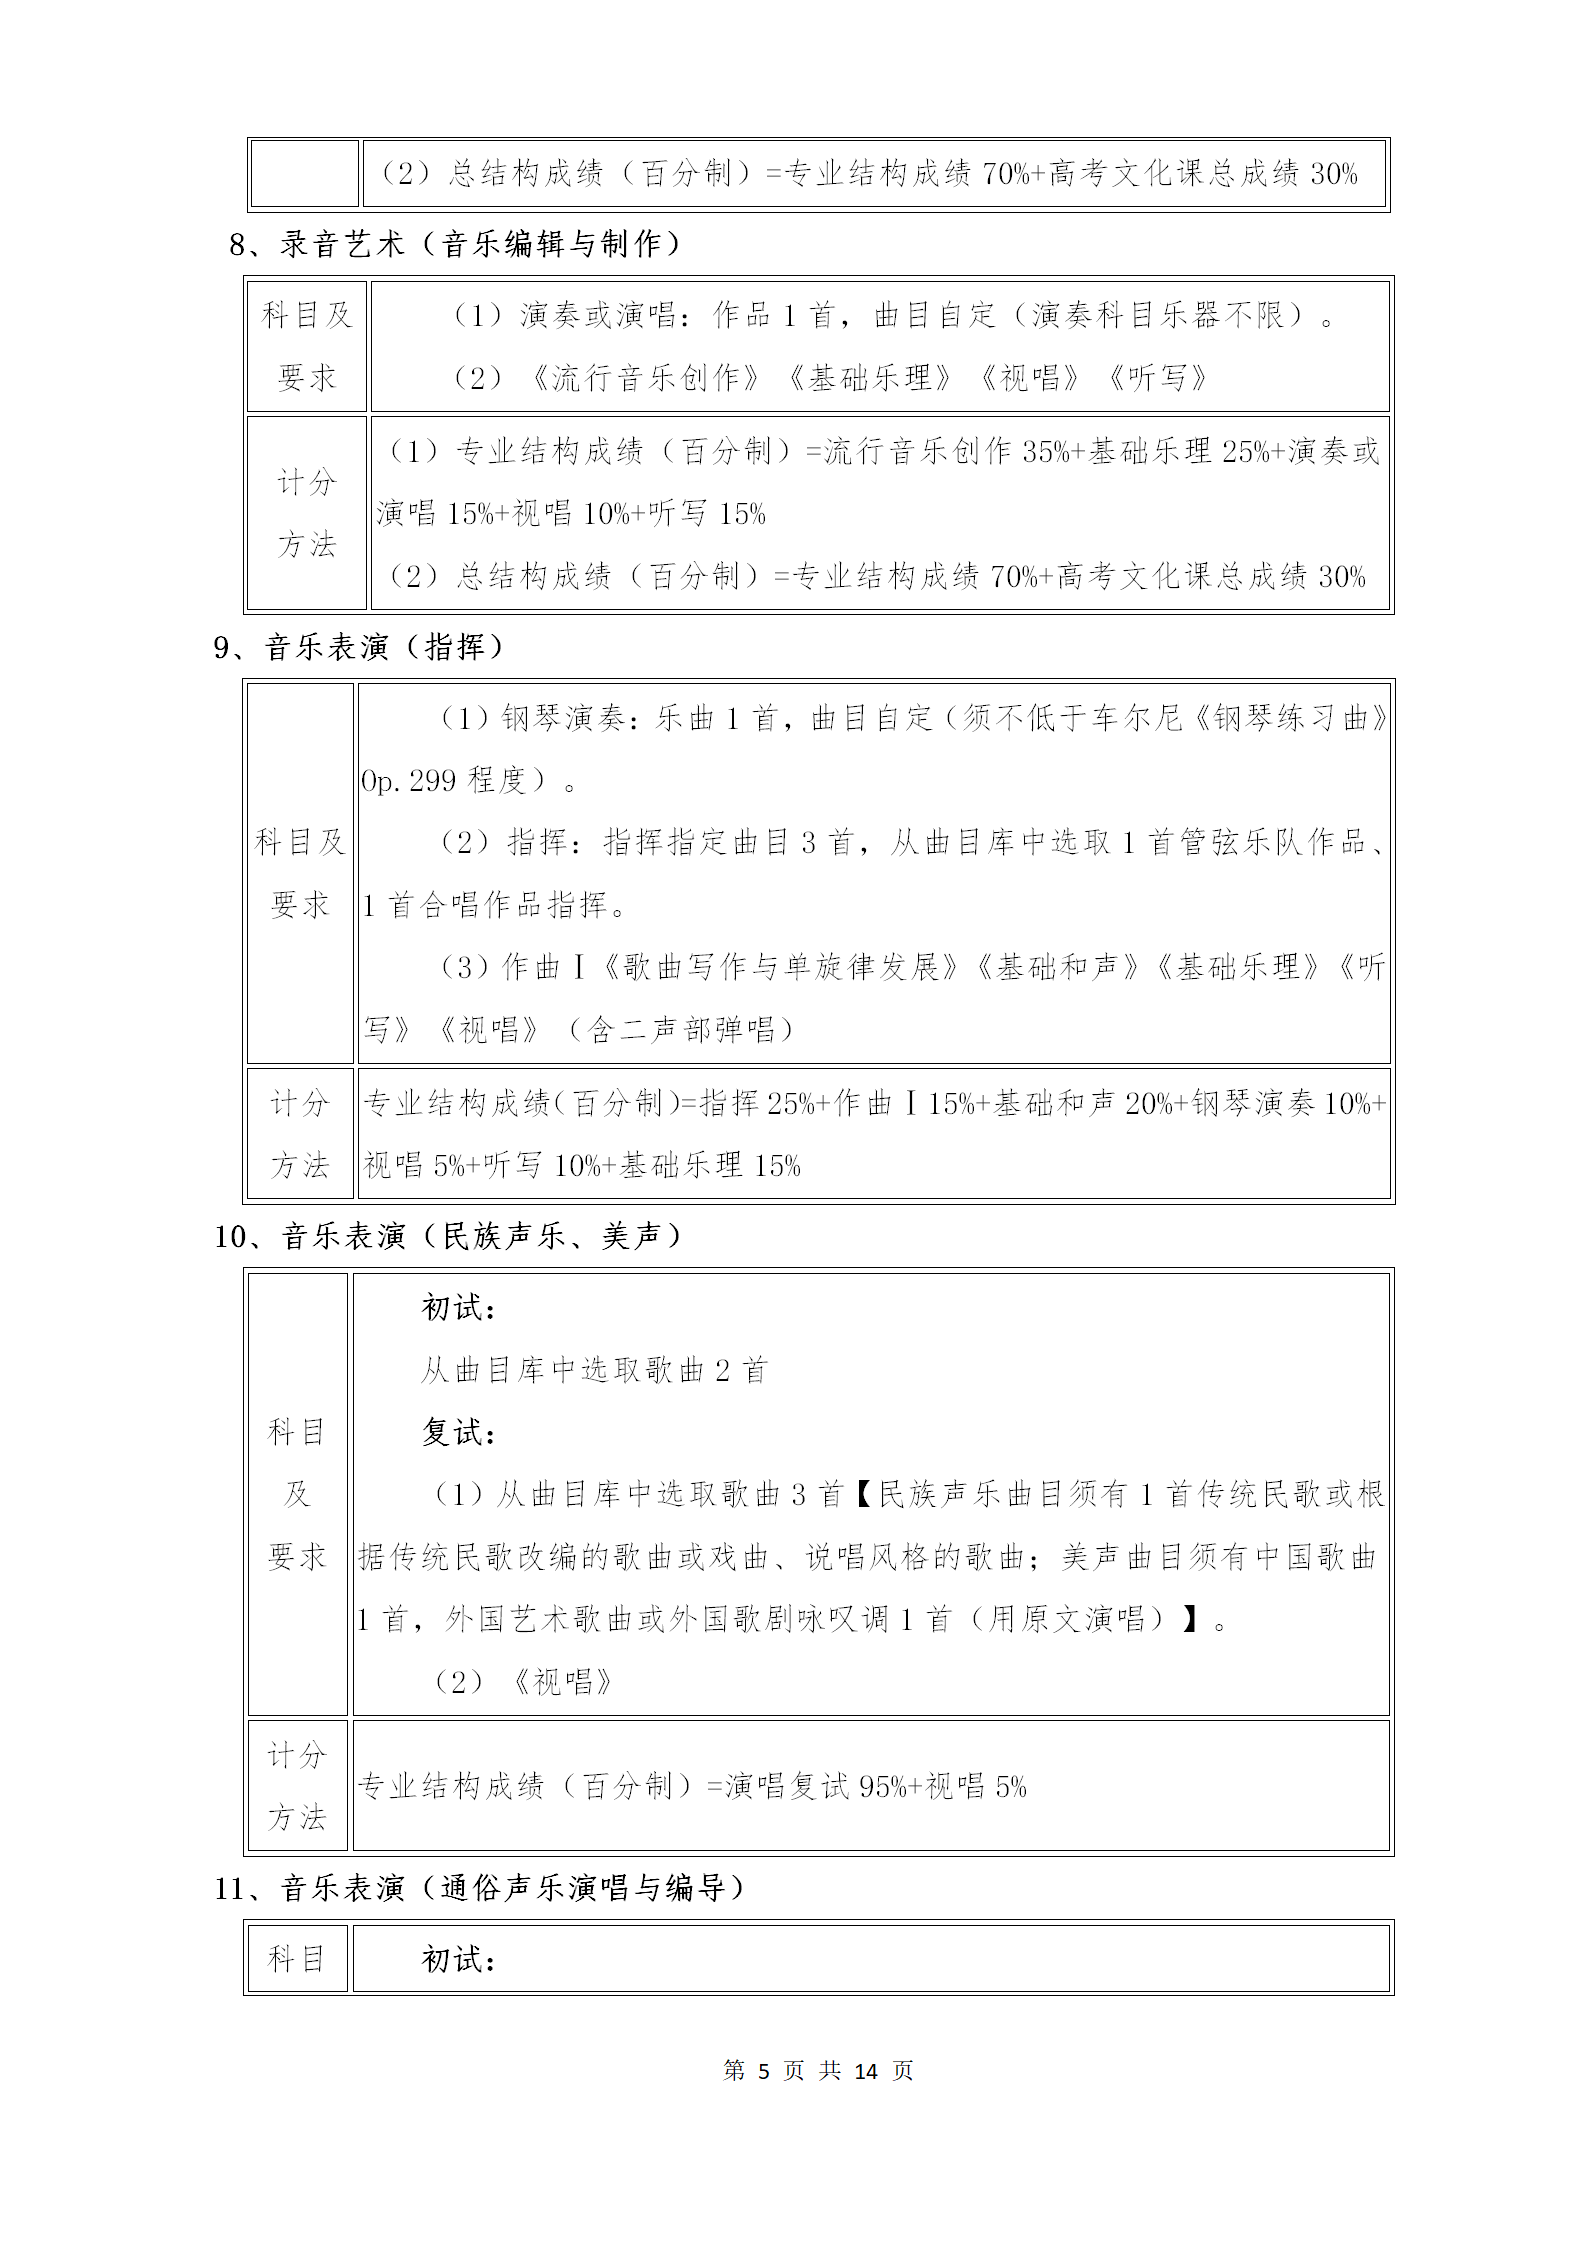 附件1：武汉音乐学院2021年普通本科招生专业考试内容和计分方法（调整版）_05.png